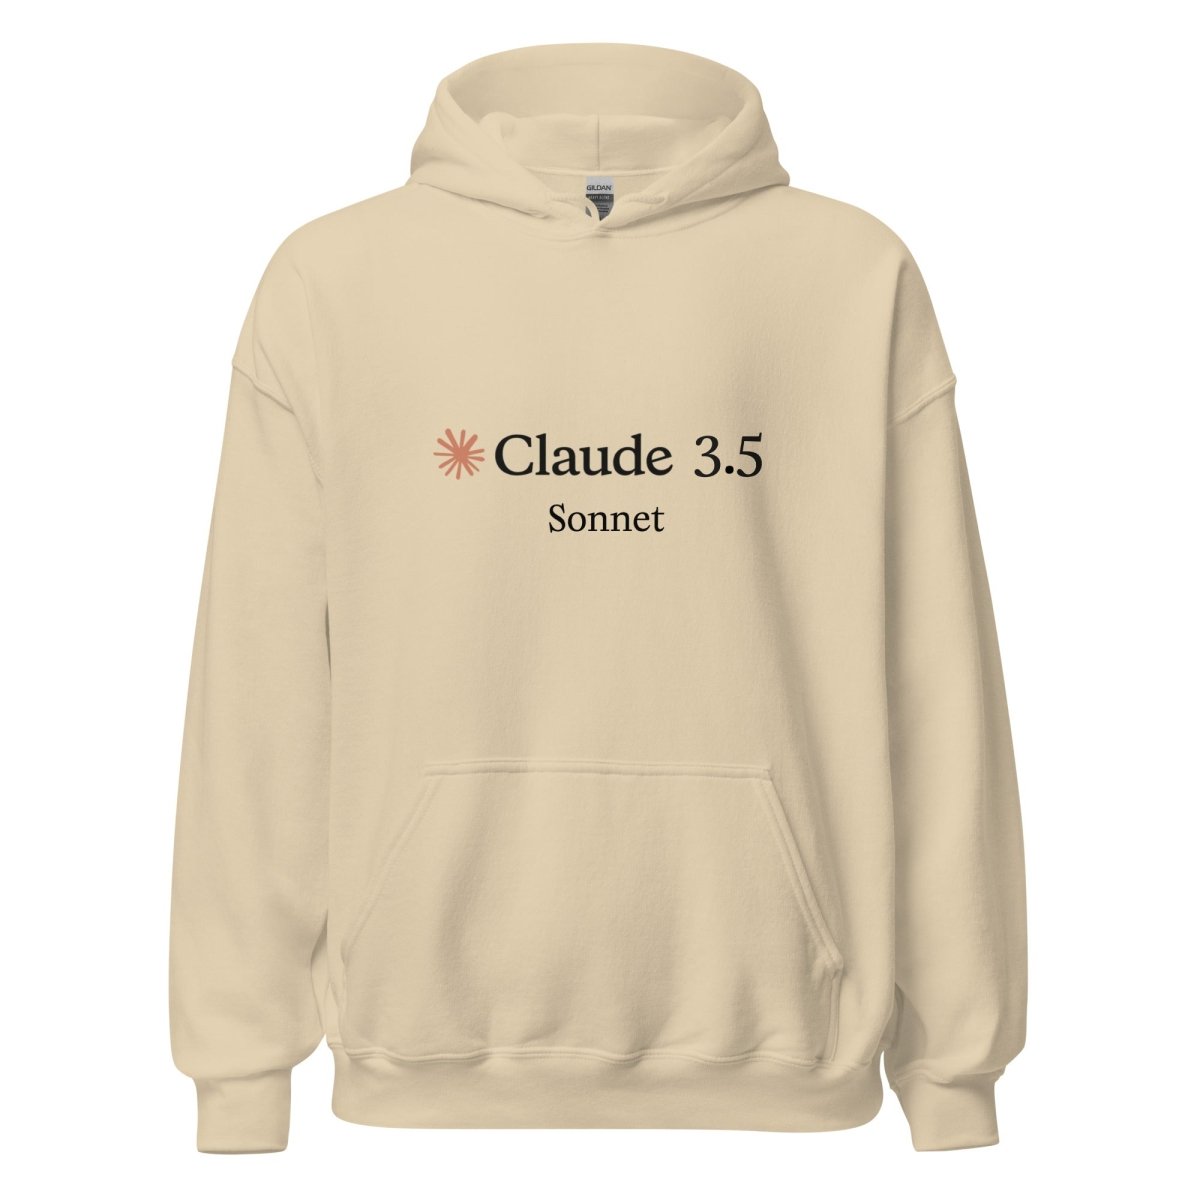 Claude 3.5 Sonnet Hoodie (unisex) - Sand - AI Store